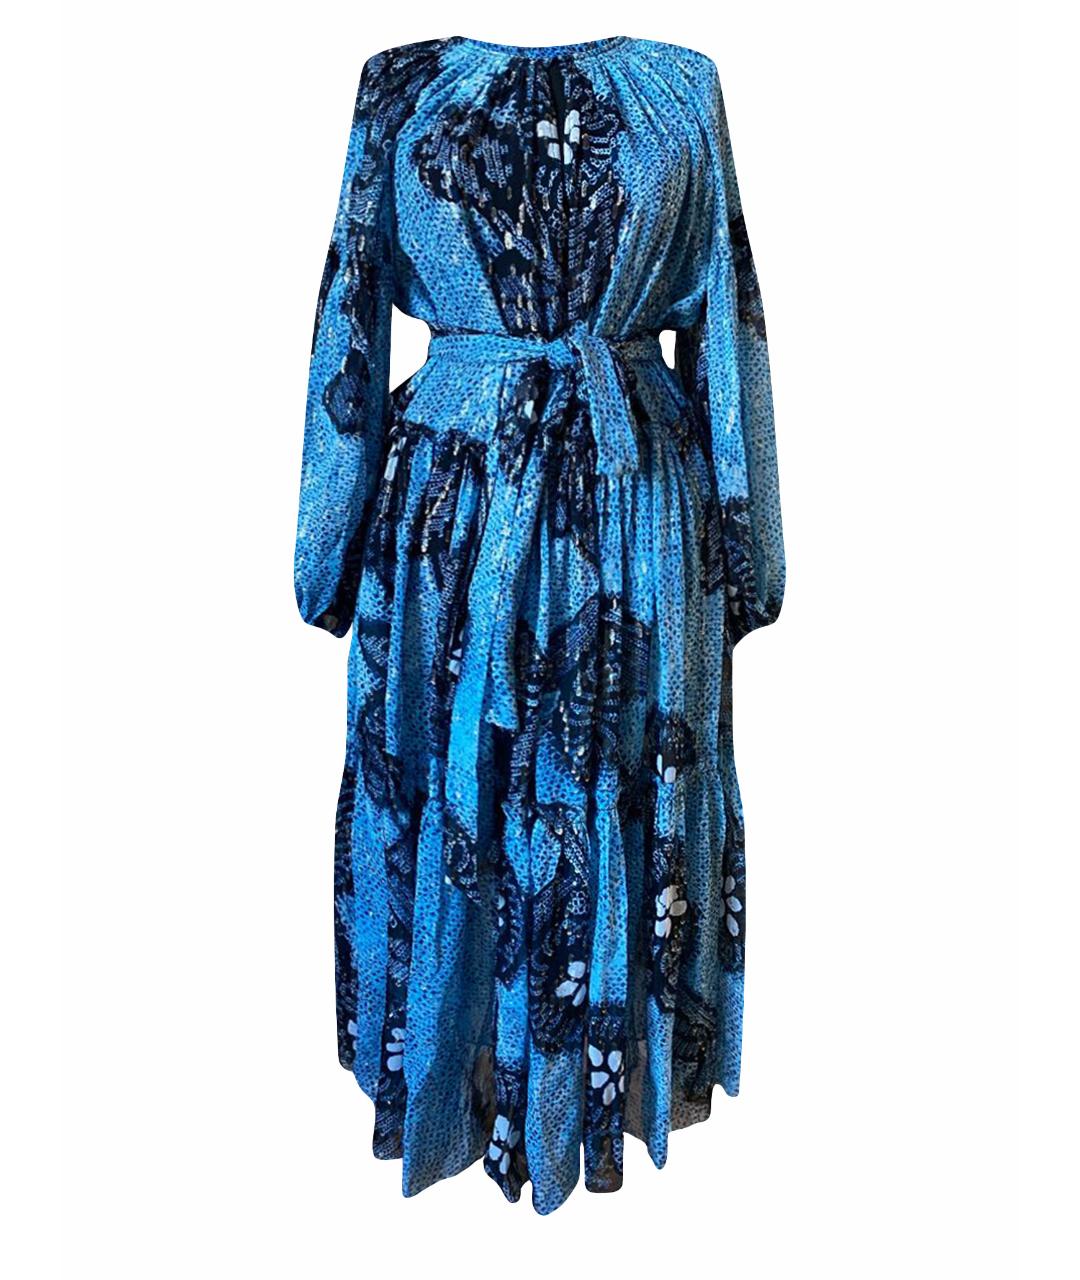 ULLA JOHNSON Голубое шелковое коктейльное платье, фото 1